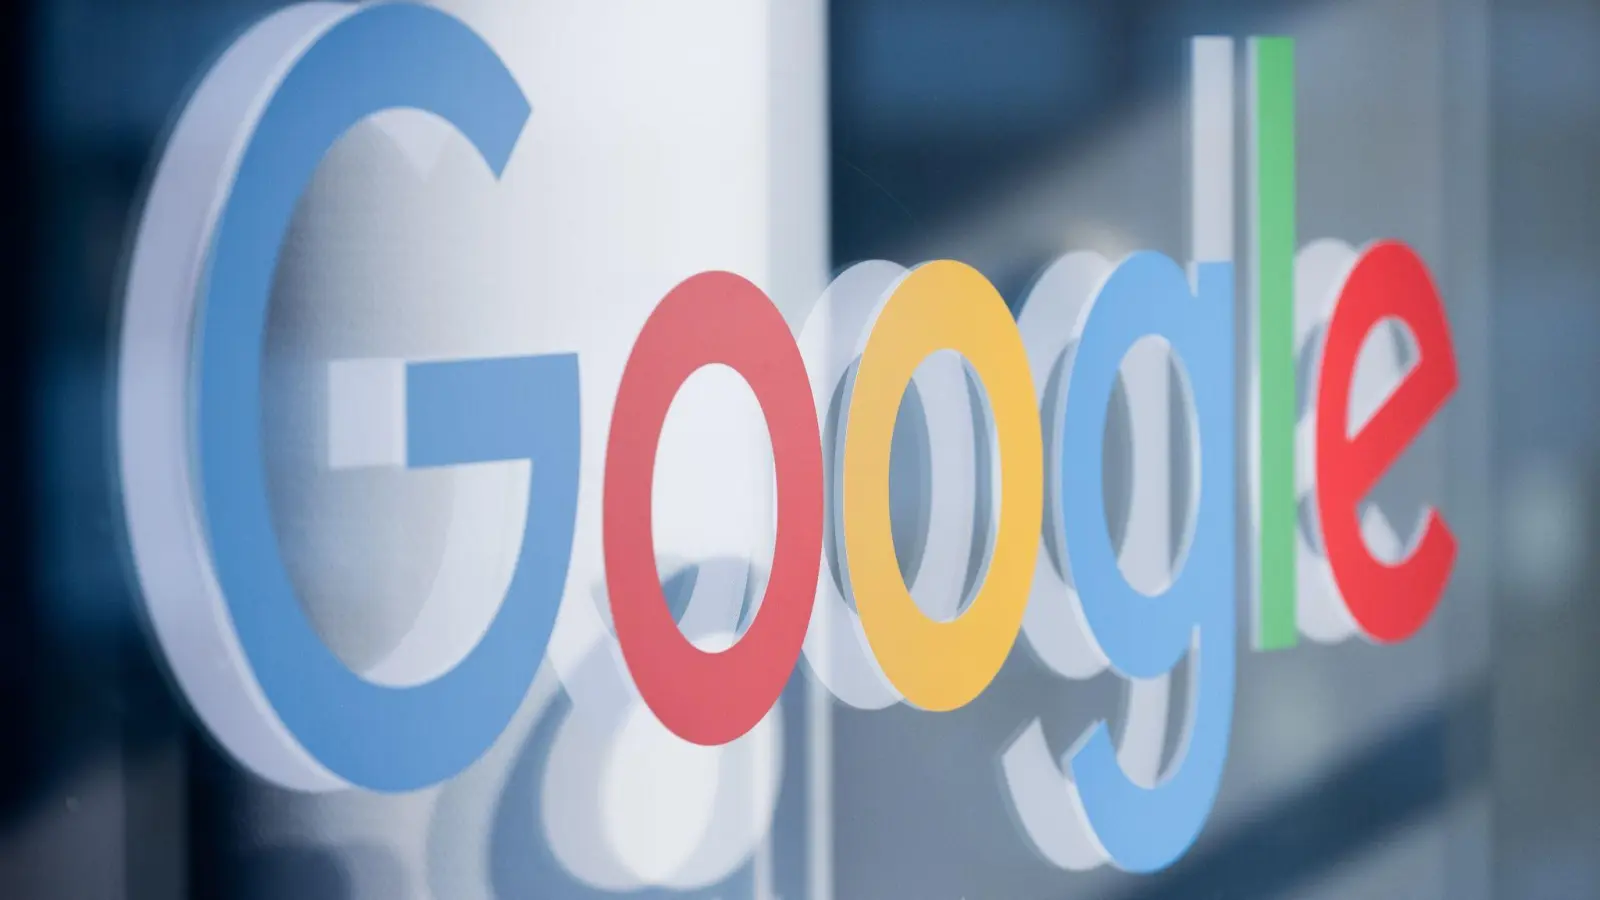 Google hat in den USA neuen Ärger mit Wettbewerbshütern. (Foto: Rolf Vennenbernd/dpa)